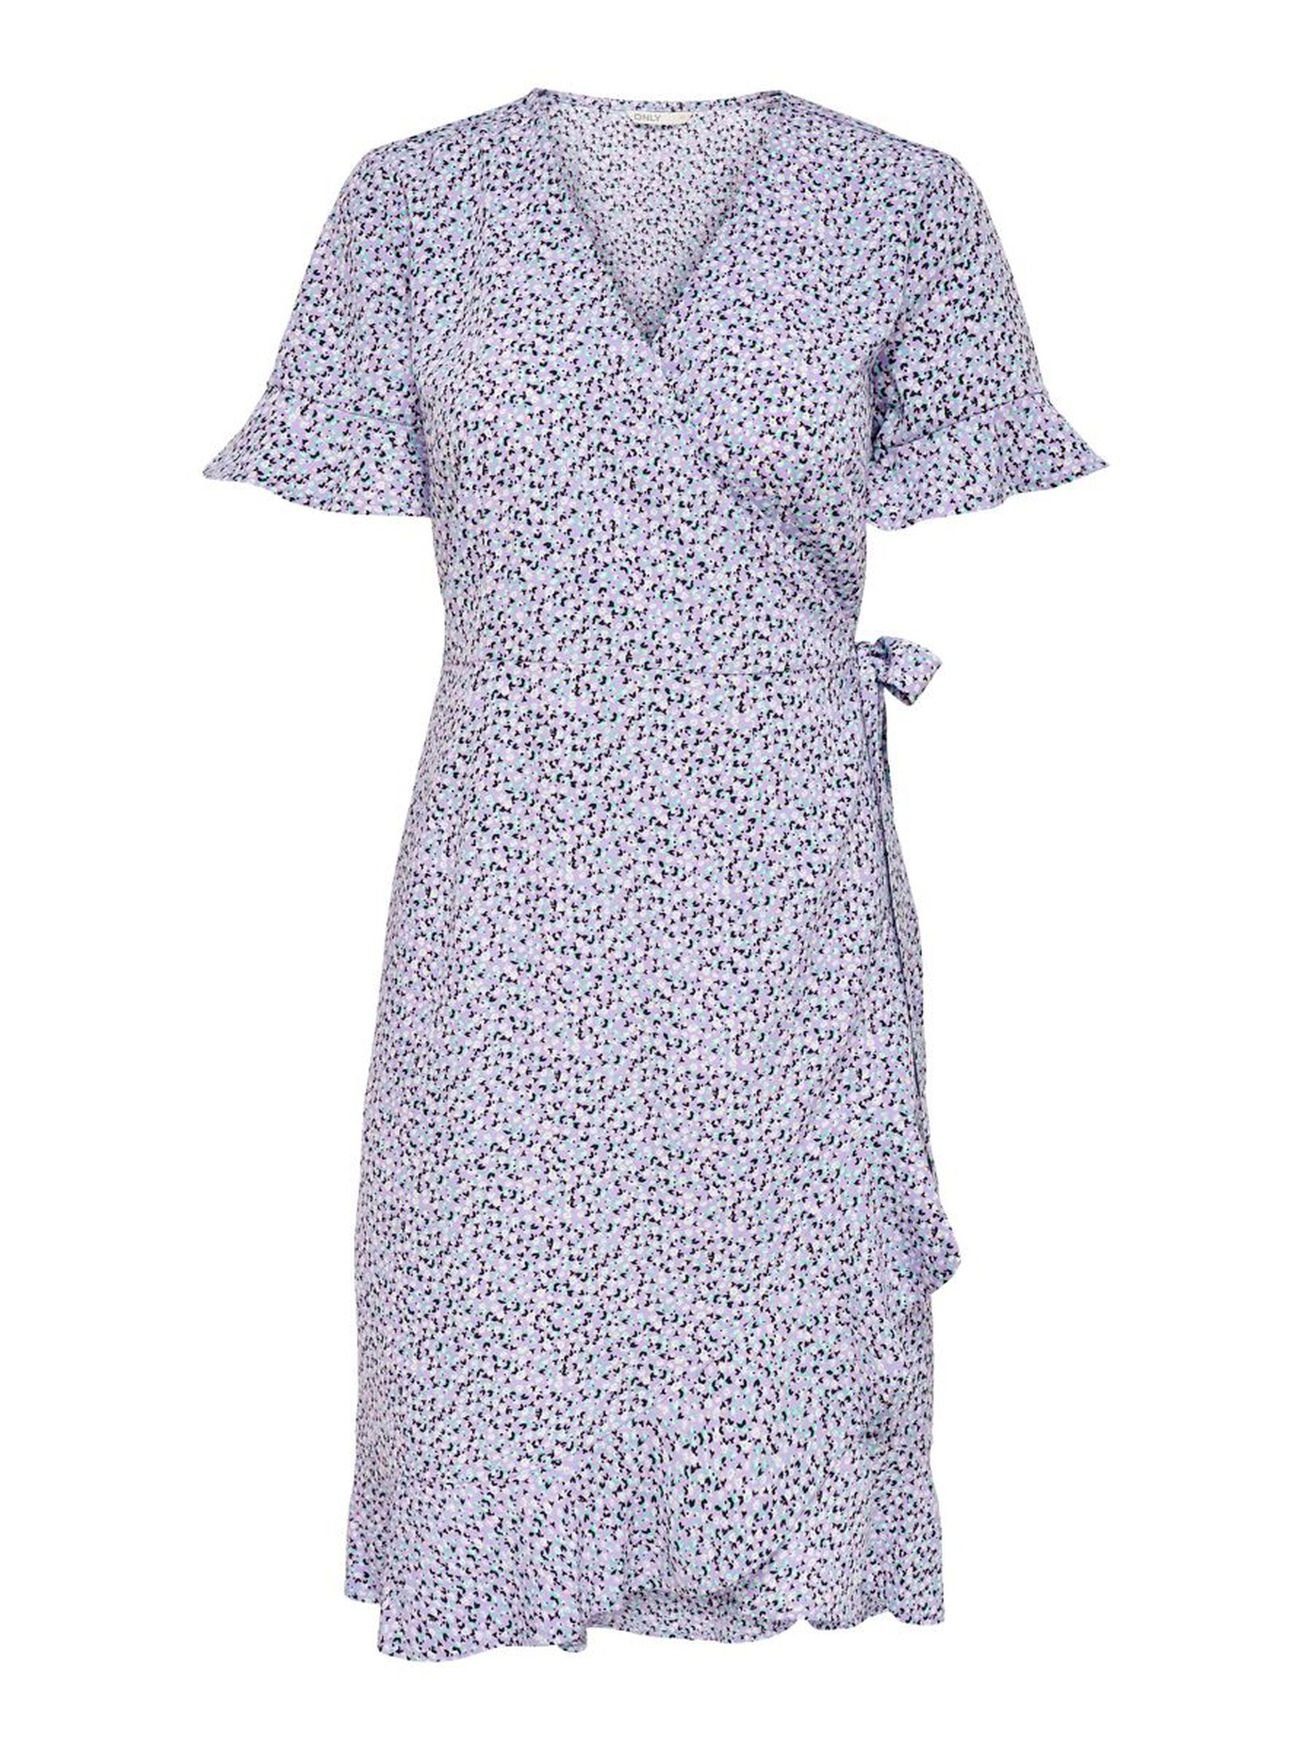 4056 ONLOLIVIA in Lockeres Violett Shirtkleid Wickelkleid (knielang, ONLY 1-tlg) Midi Blusen Kurzarm Bindegürtel mit